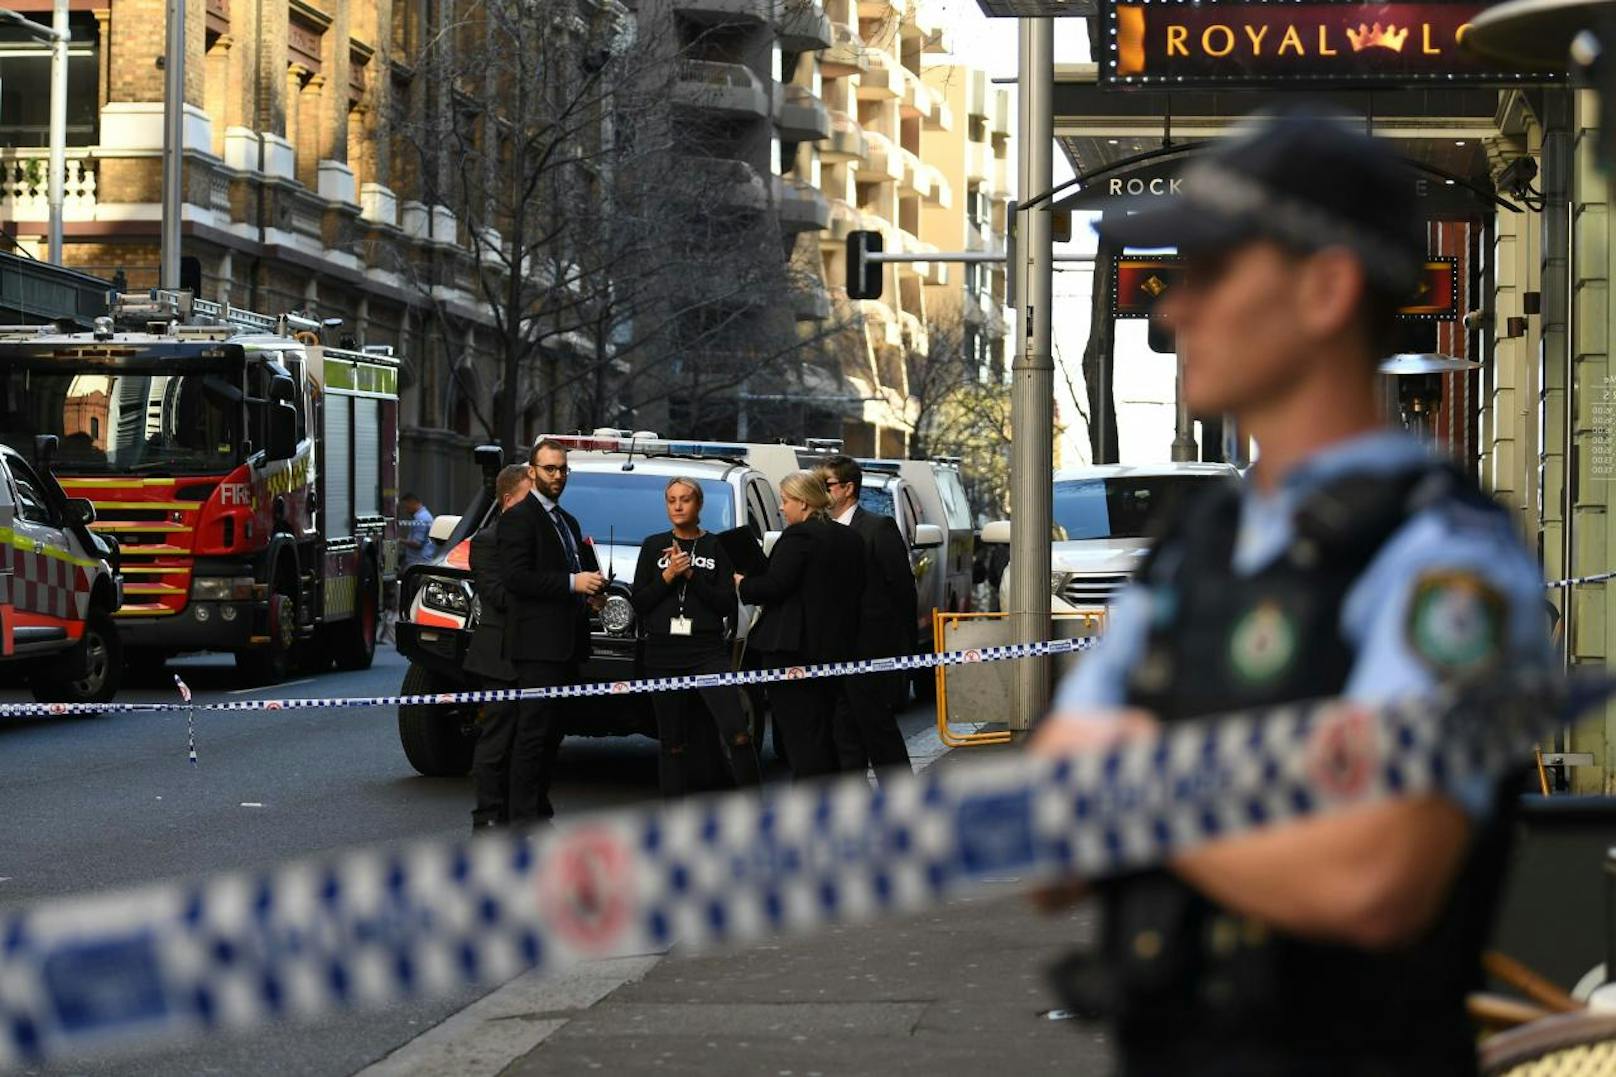 Ein Mann hat in Sydney eine Frau mit einem Messer attackiert und verletzt.